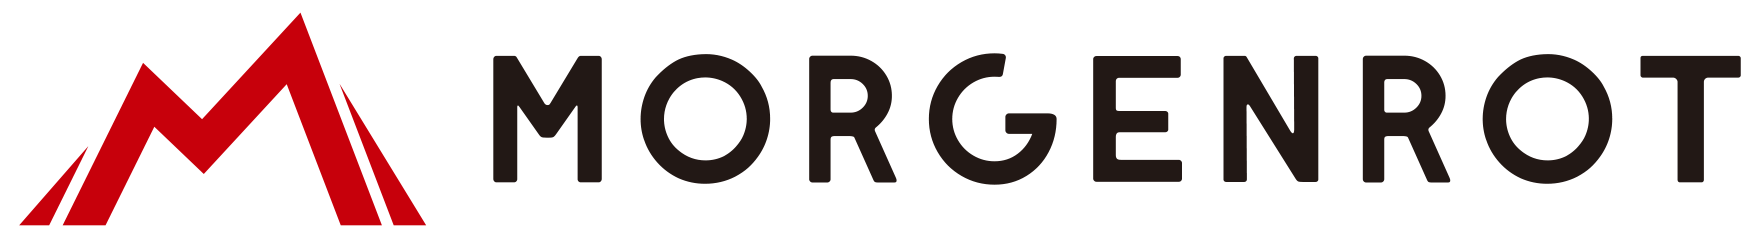 Morgenrot logo